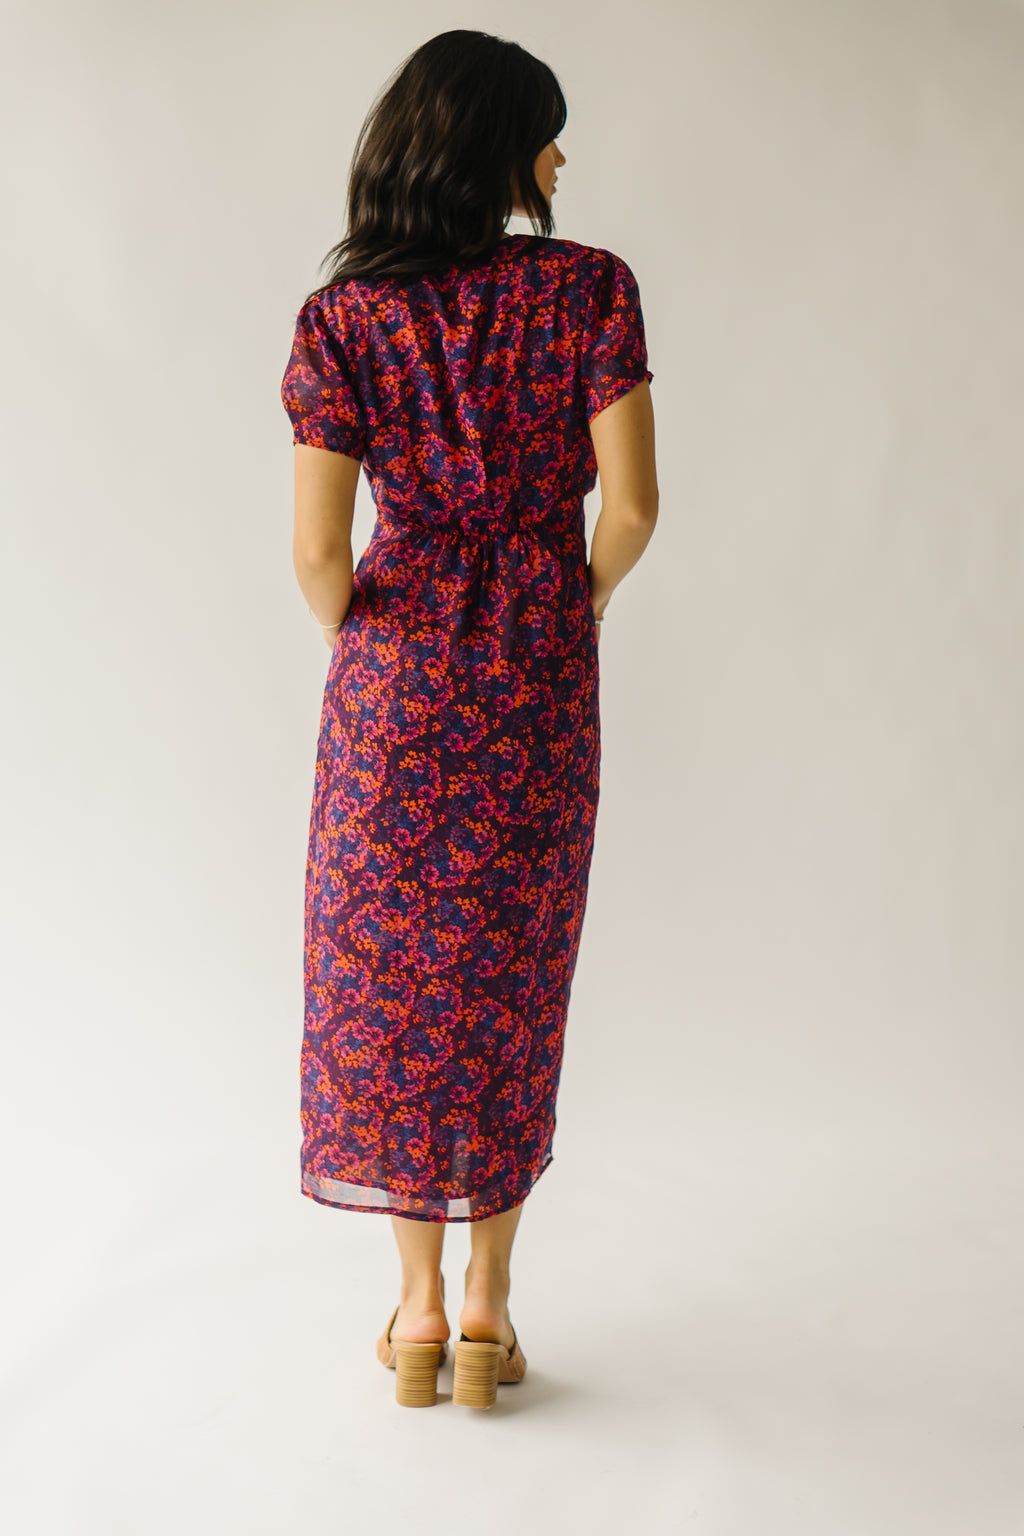 Piper & Scoot Dresses | Sleeved Dresses for Women